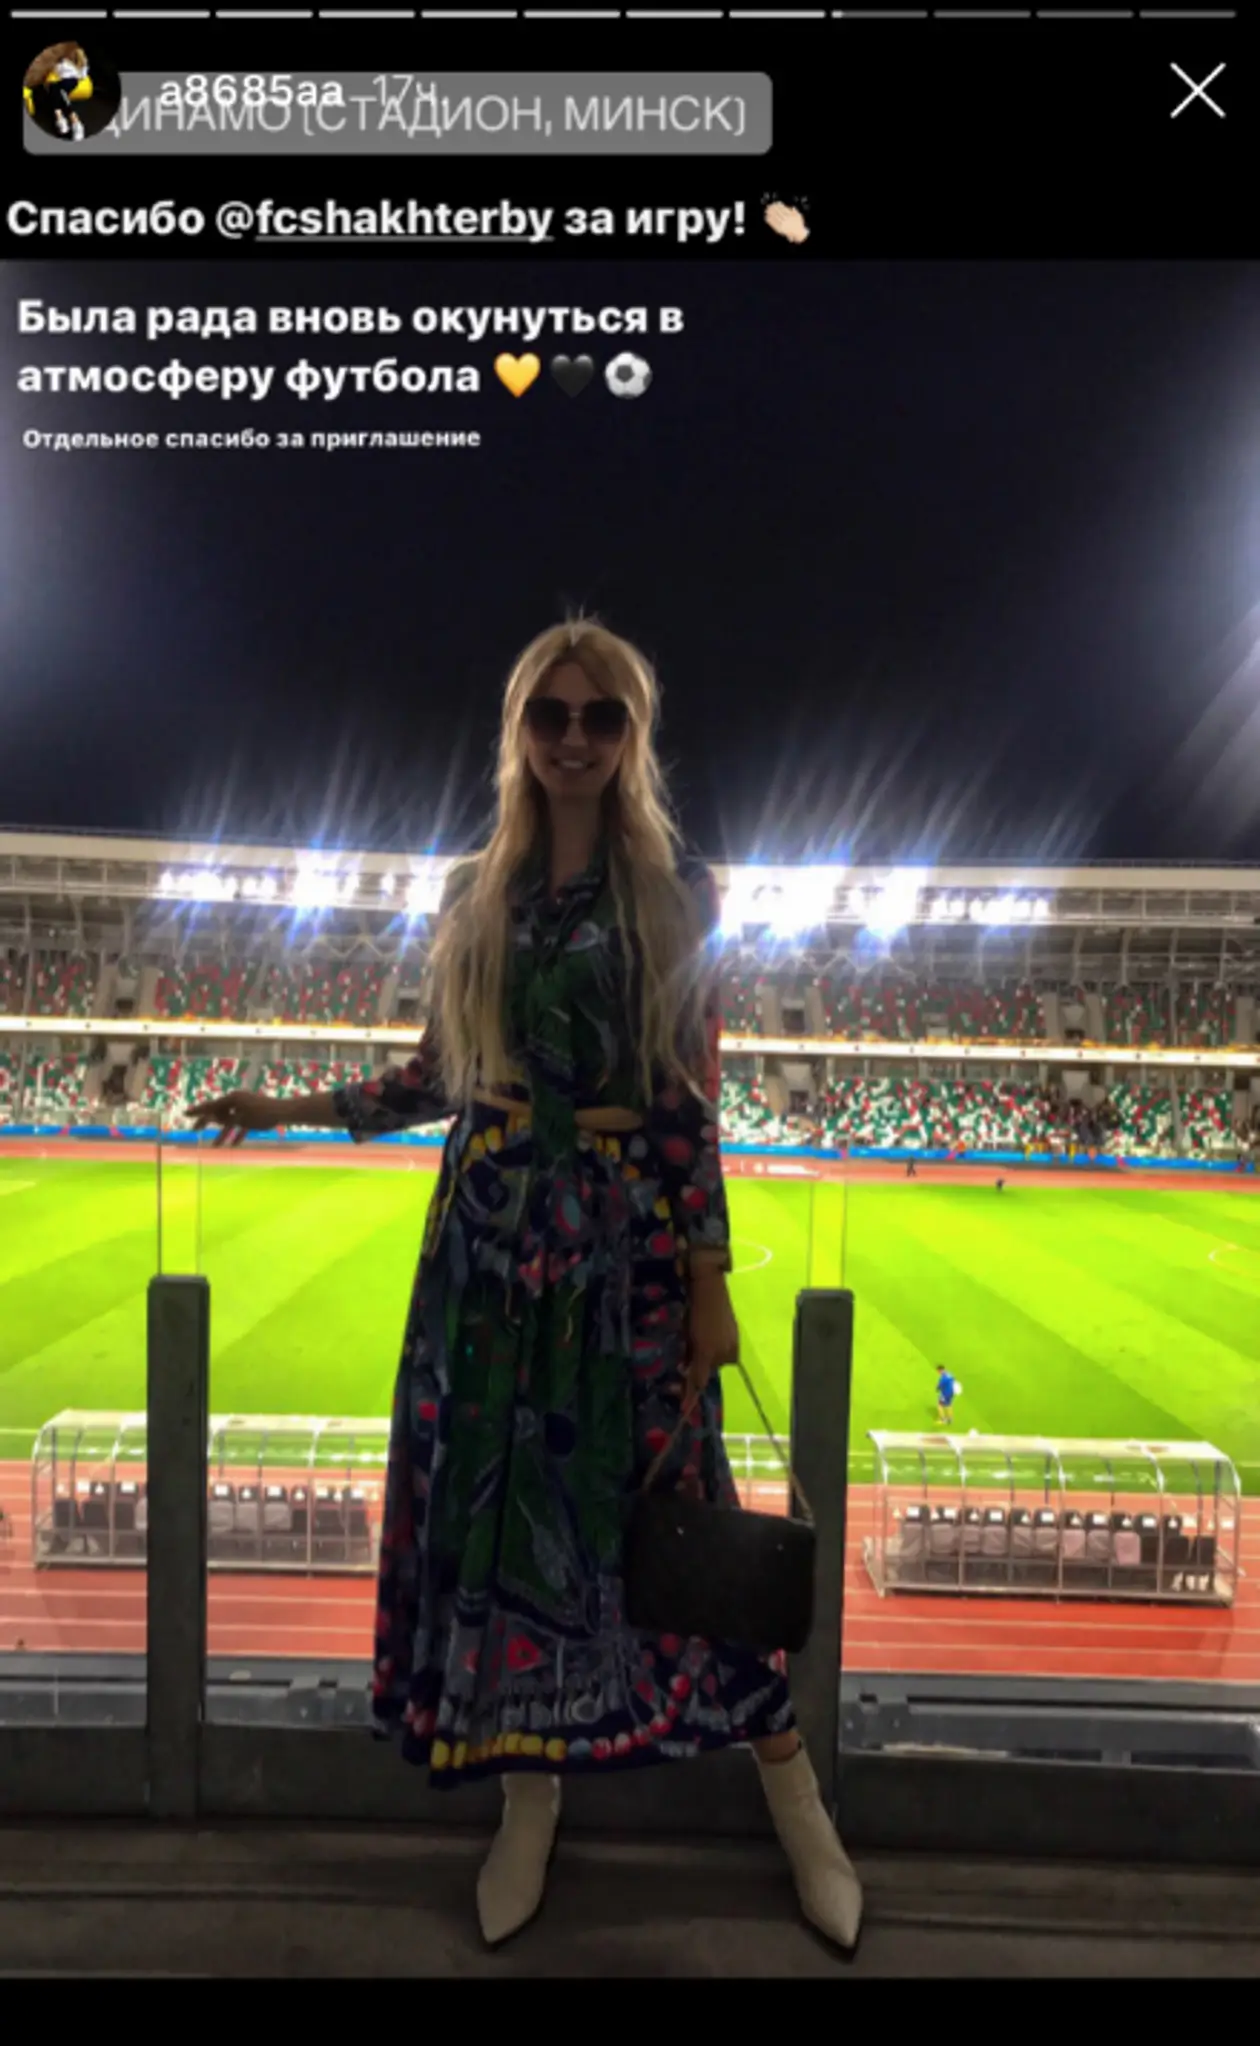 В Беларуси тоже есть своя Виктория Лопырева. Девушка, украсившая матч Шахтер-Торино